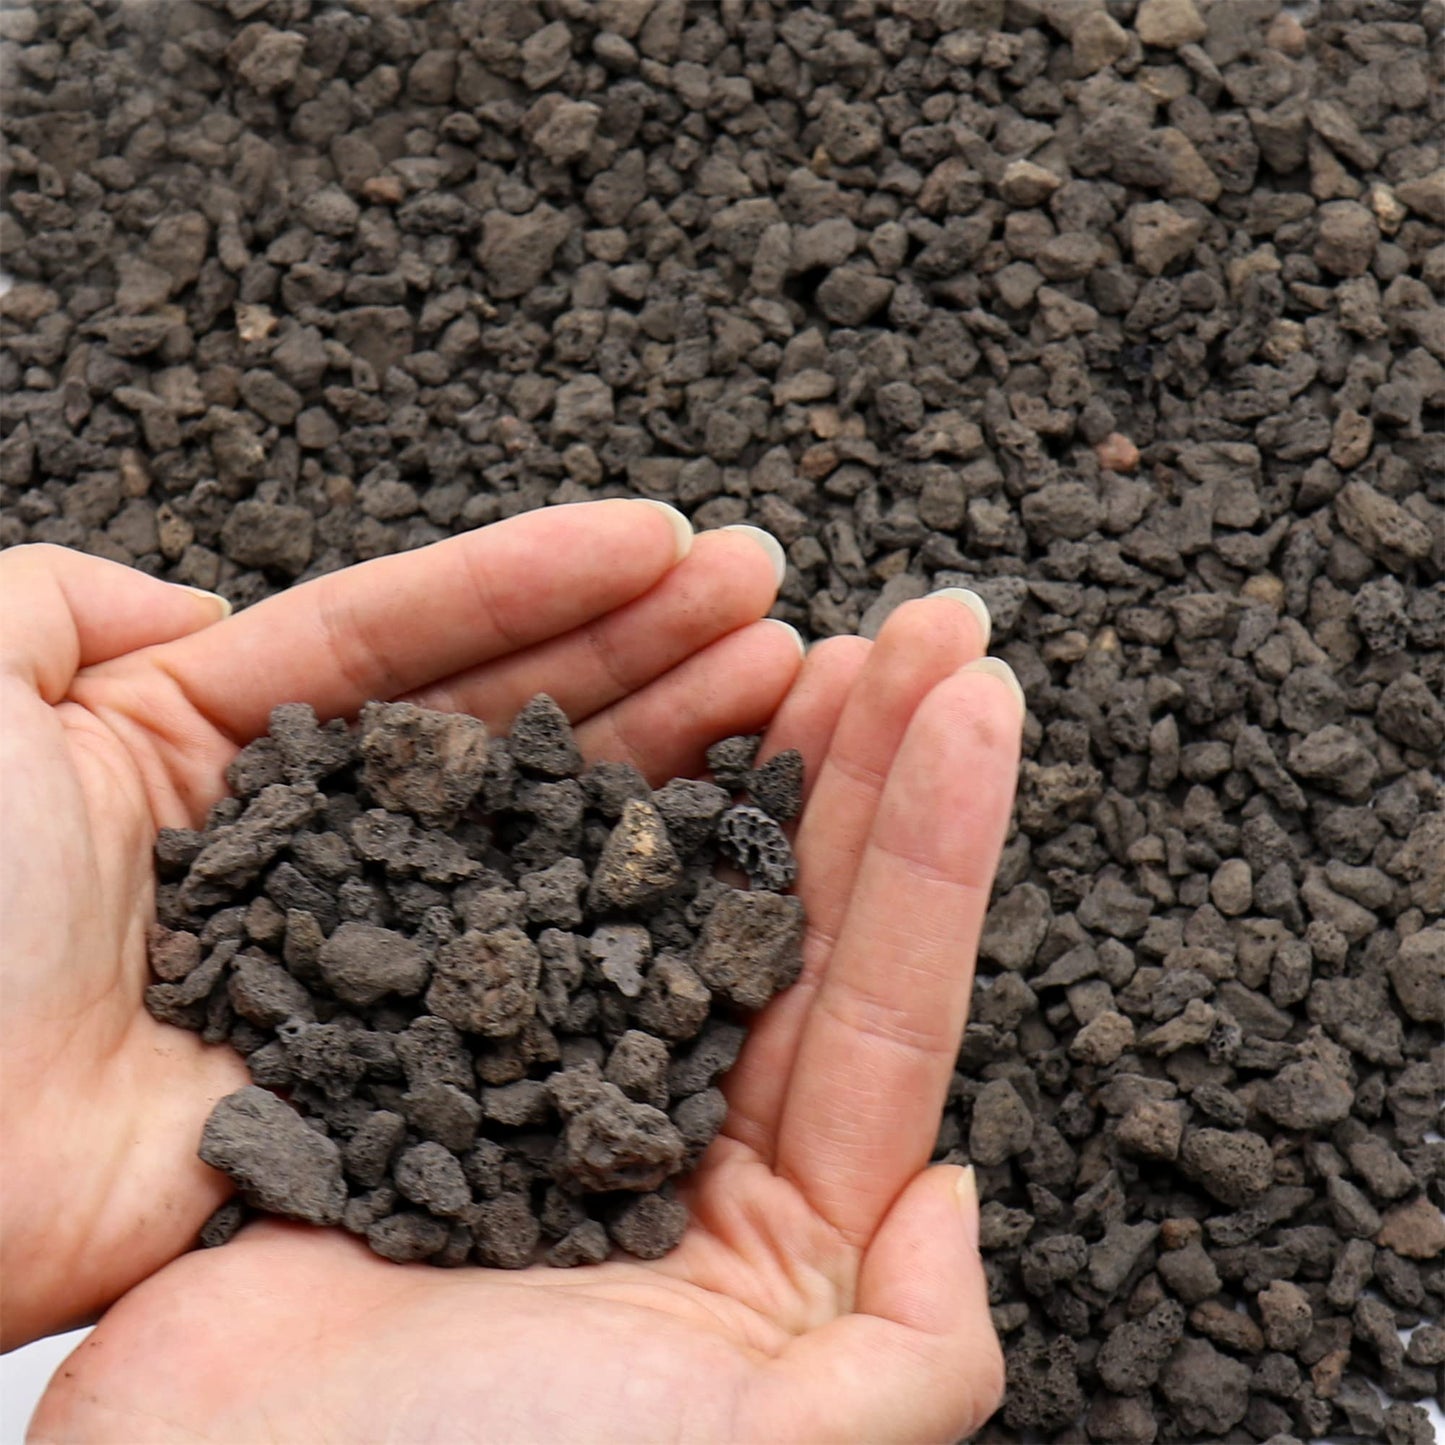 Premium Pebbles Volcanic Rock for Plants. Black Lava Rock. 1/5 Inch - 2 lbs for Potting Soil, Succulents, Pots, Plants